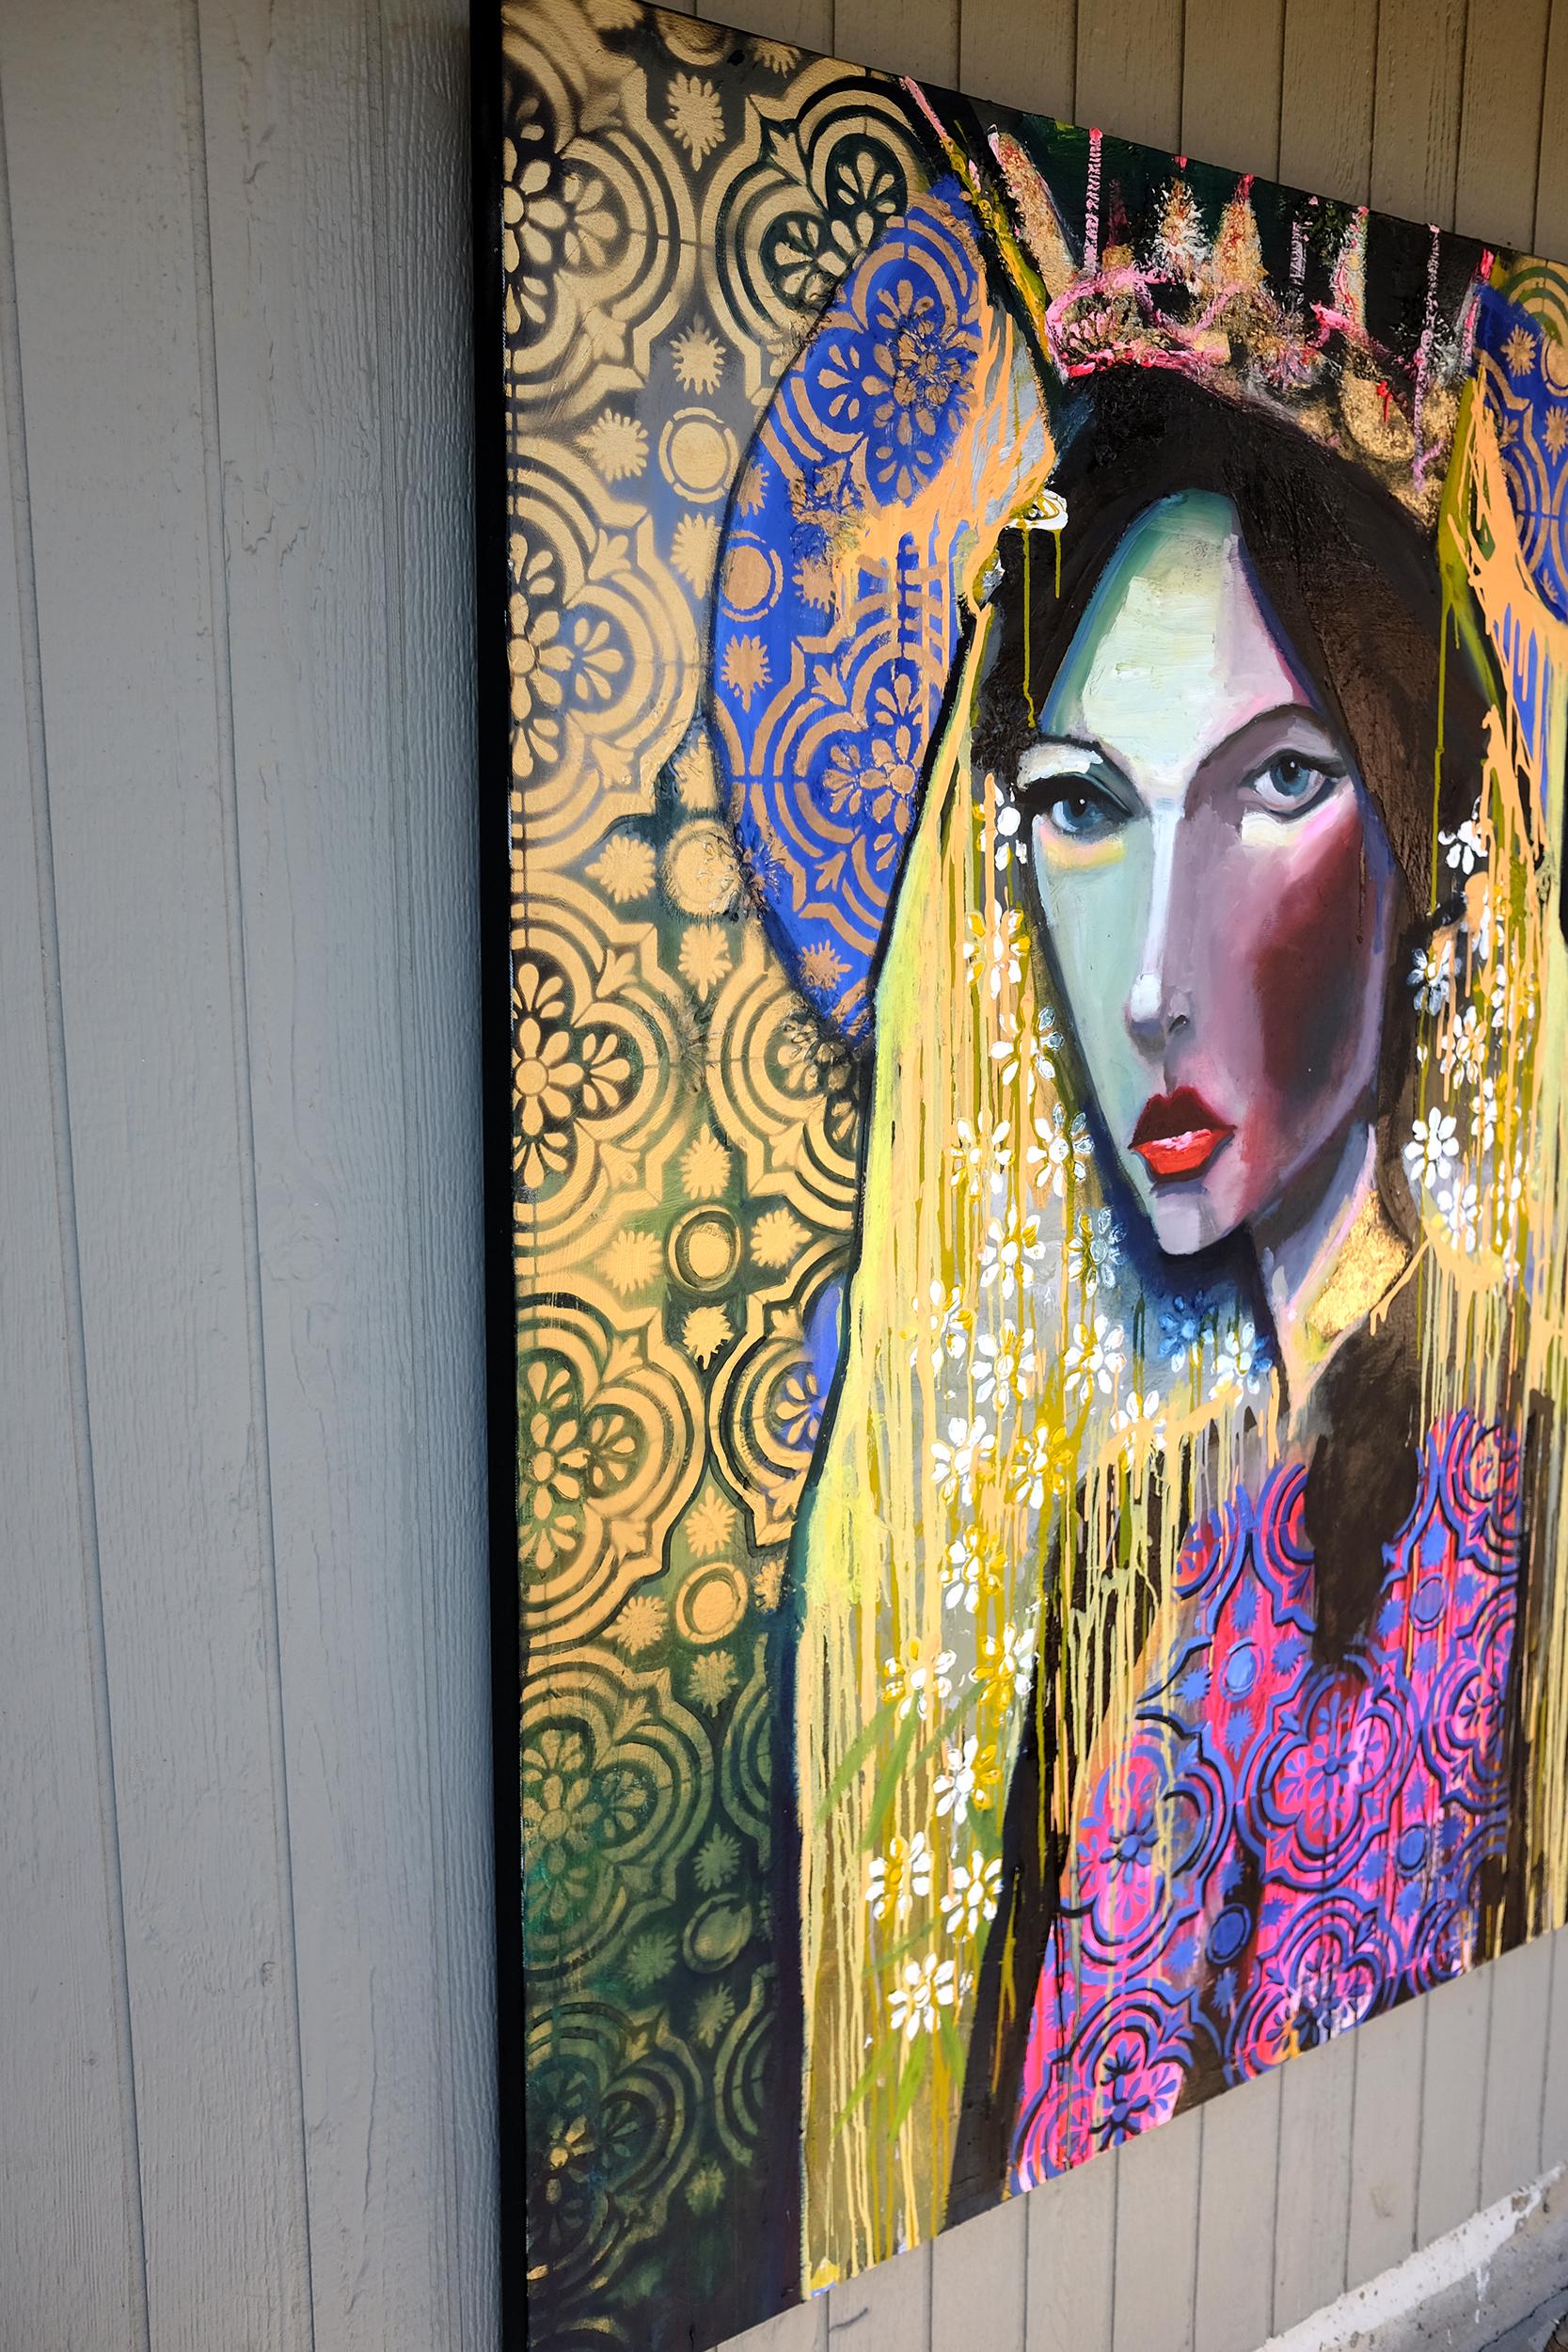 <p>Commentaires de l'artiste<br />Fait partie de la série de portraits féminins dramatiques de l'artiste Scott Dykema. La femme regarde avec un regard perçant, son visage délicat encadré d'un voile fleuri, d'une couronne et d'une auréole en or.